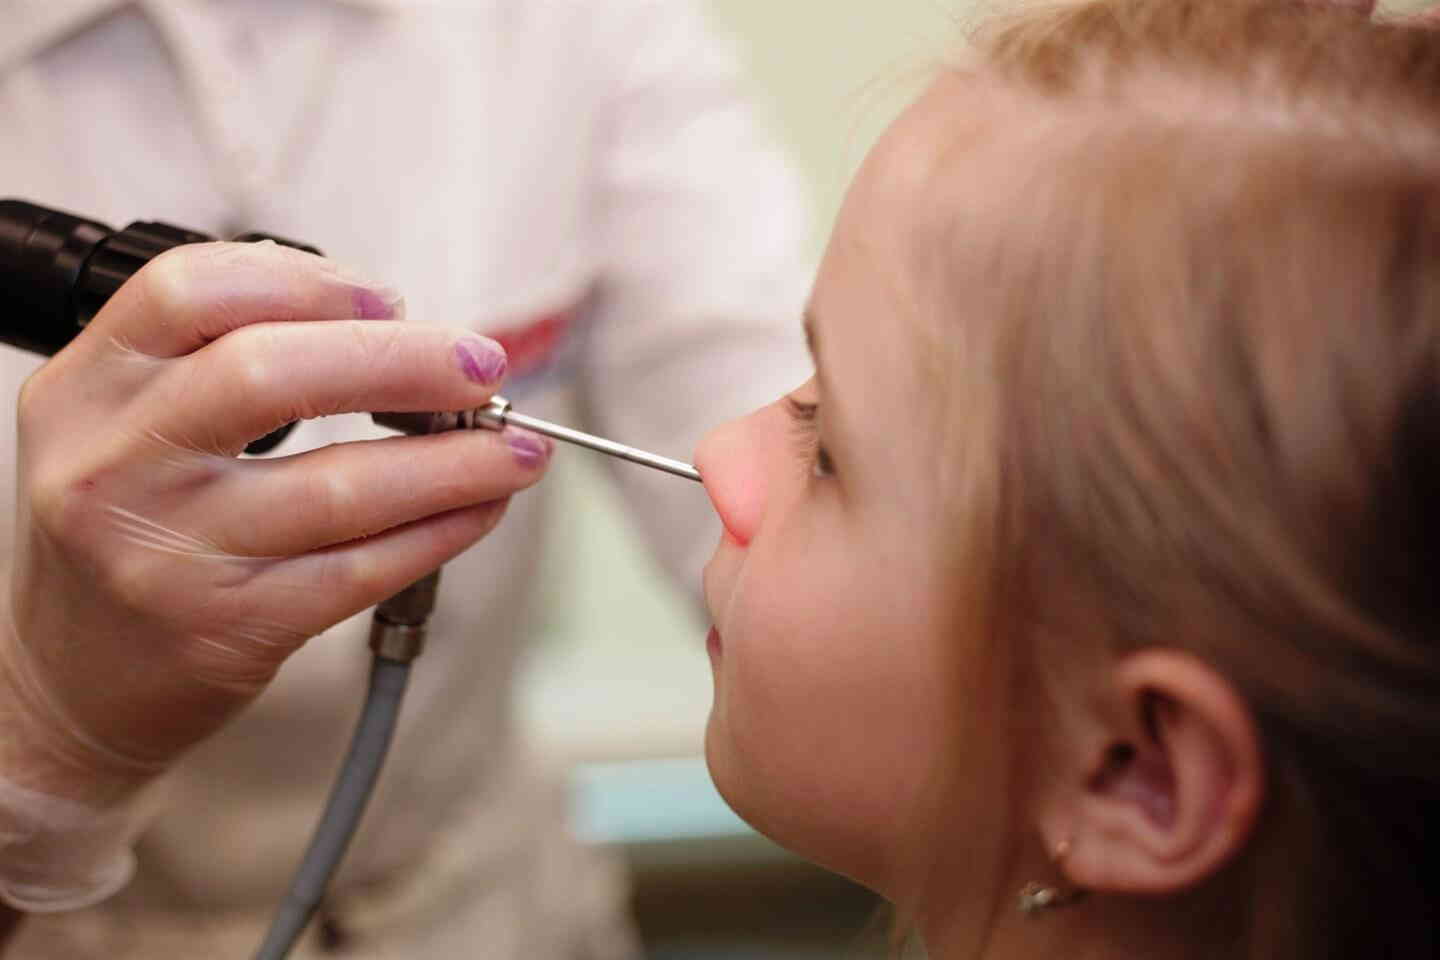 Аденоиды без операции - массаж для детей, лазер в нос: как вылечить у ребенка